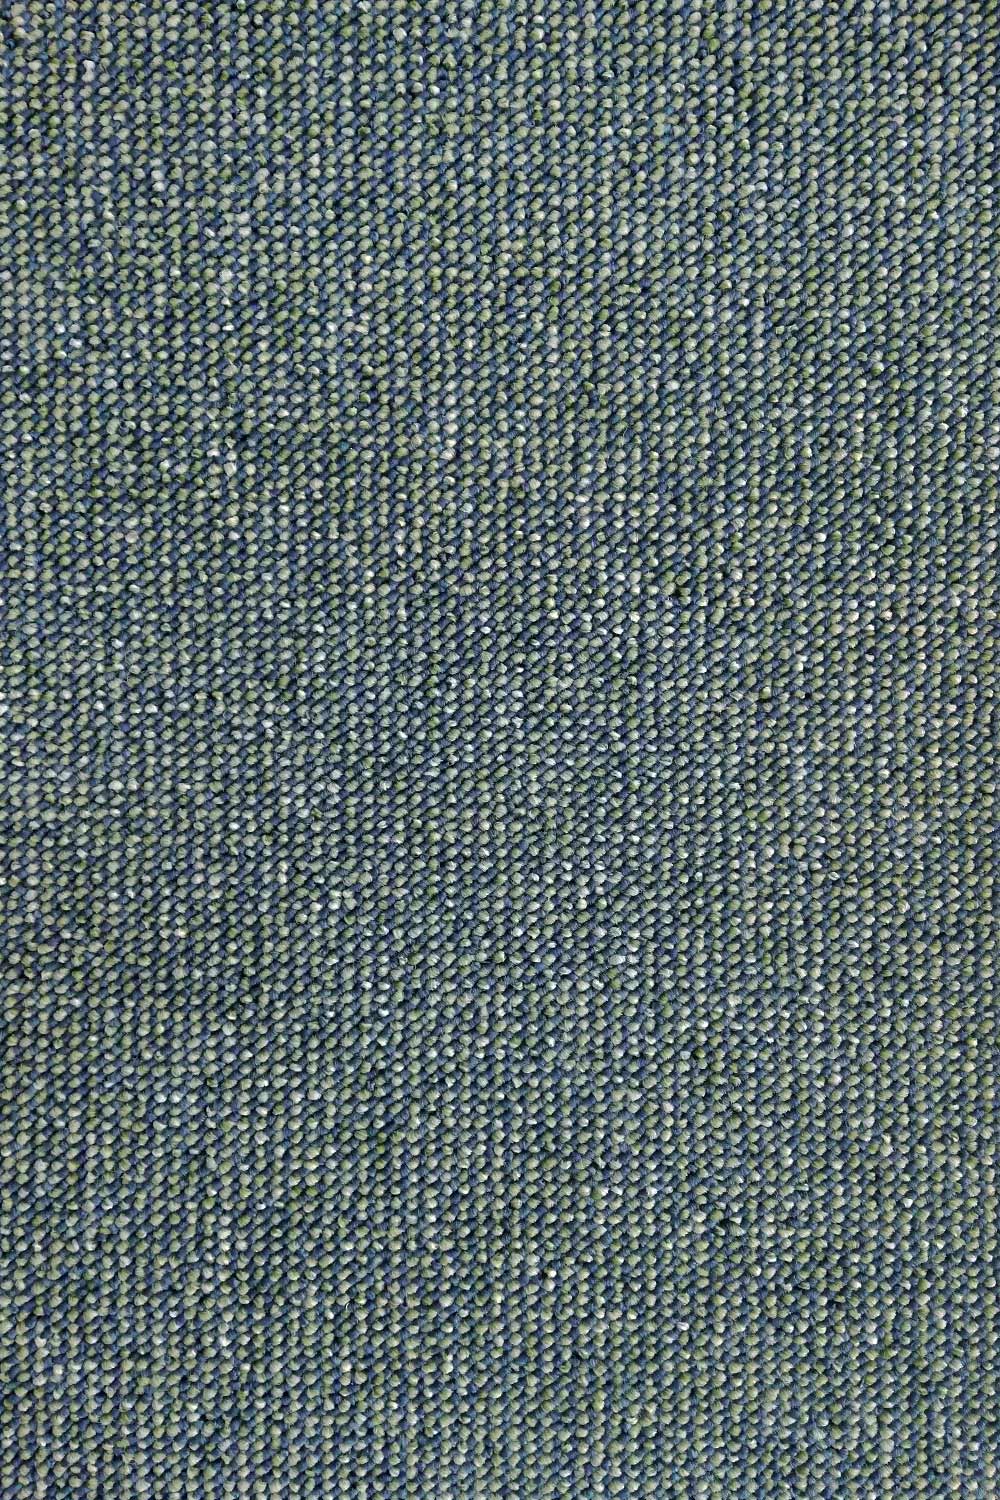 Metrážový koberec PALERMO 4726 Grey